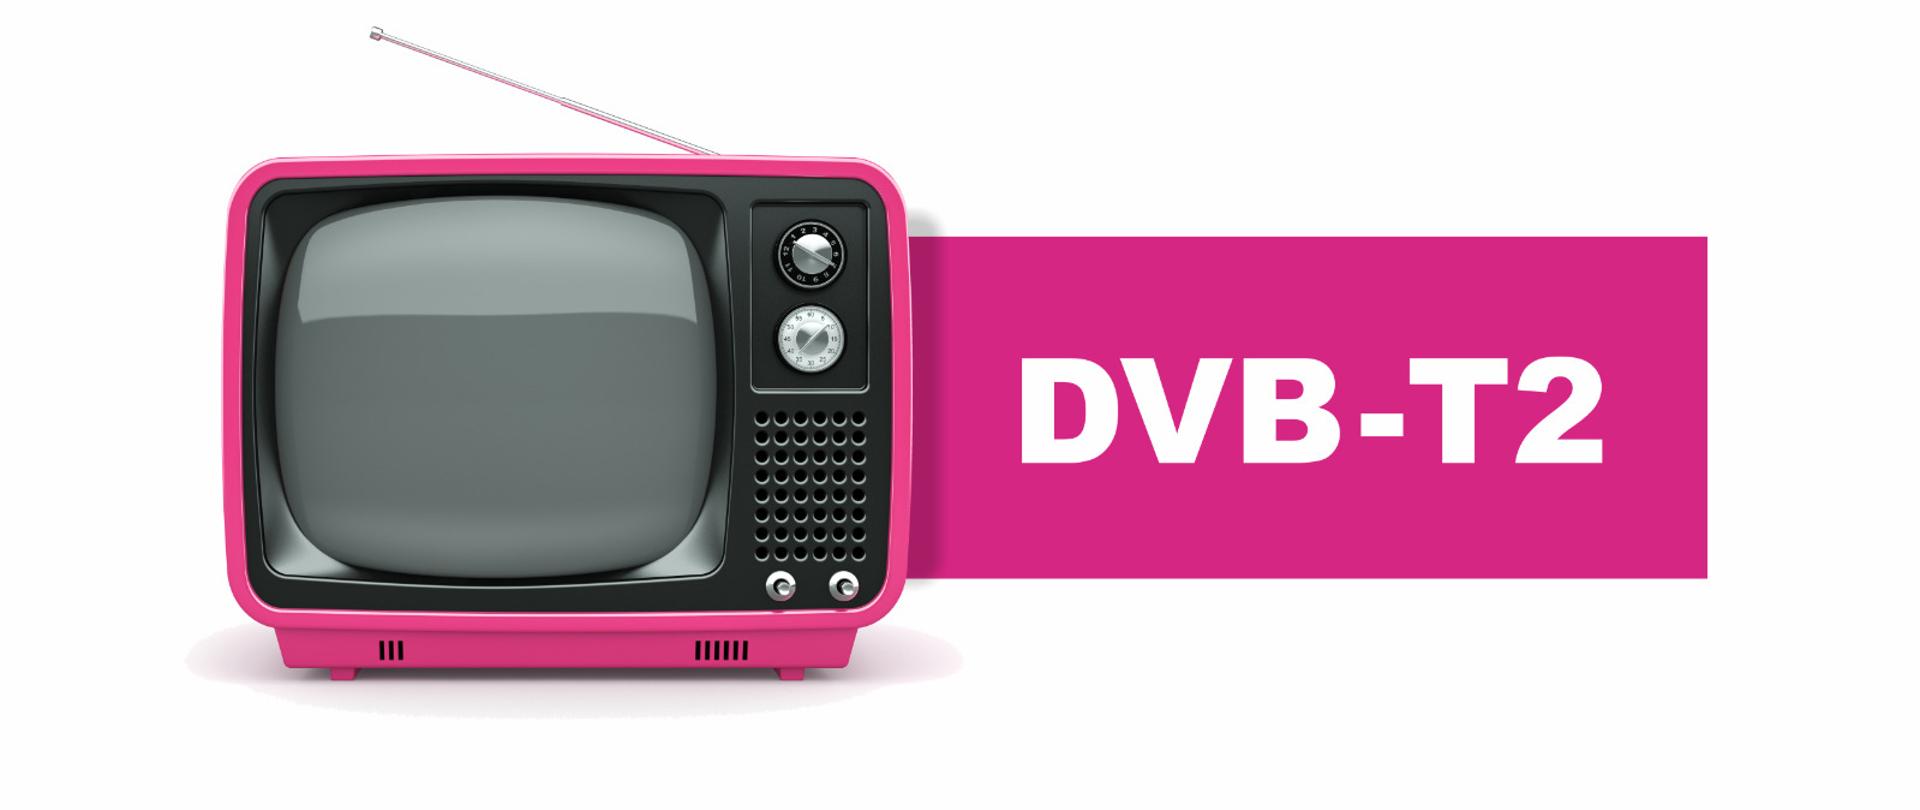 Zdjęcie na białym tle - z lewej strony różowy telewizor starego typu, obok na różowej belce napis DVB-T2.